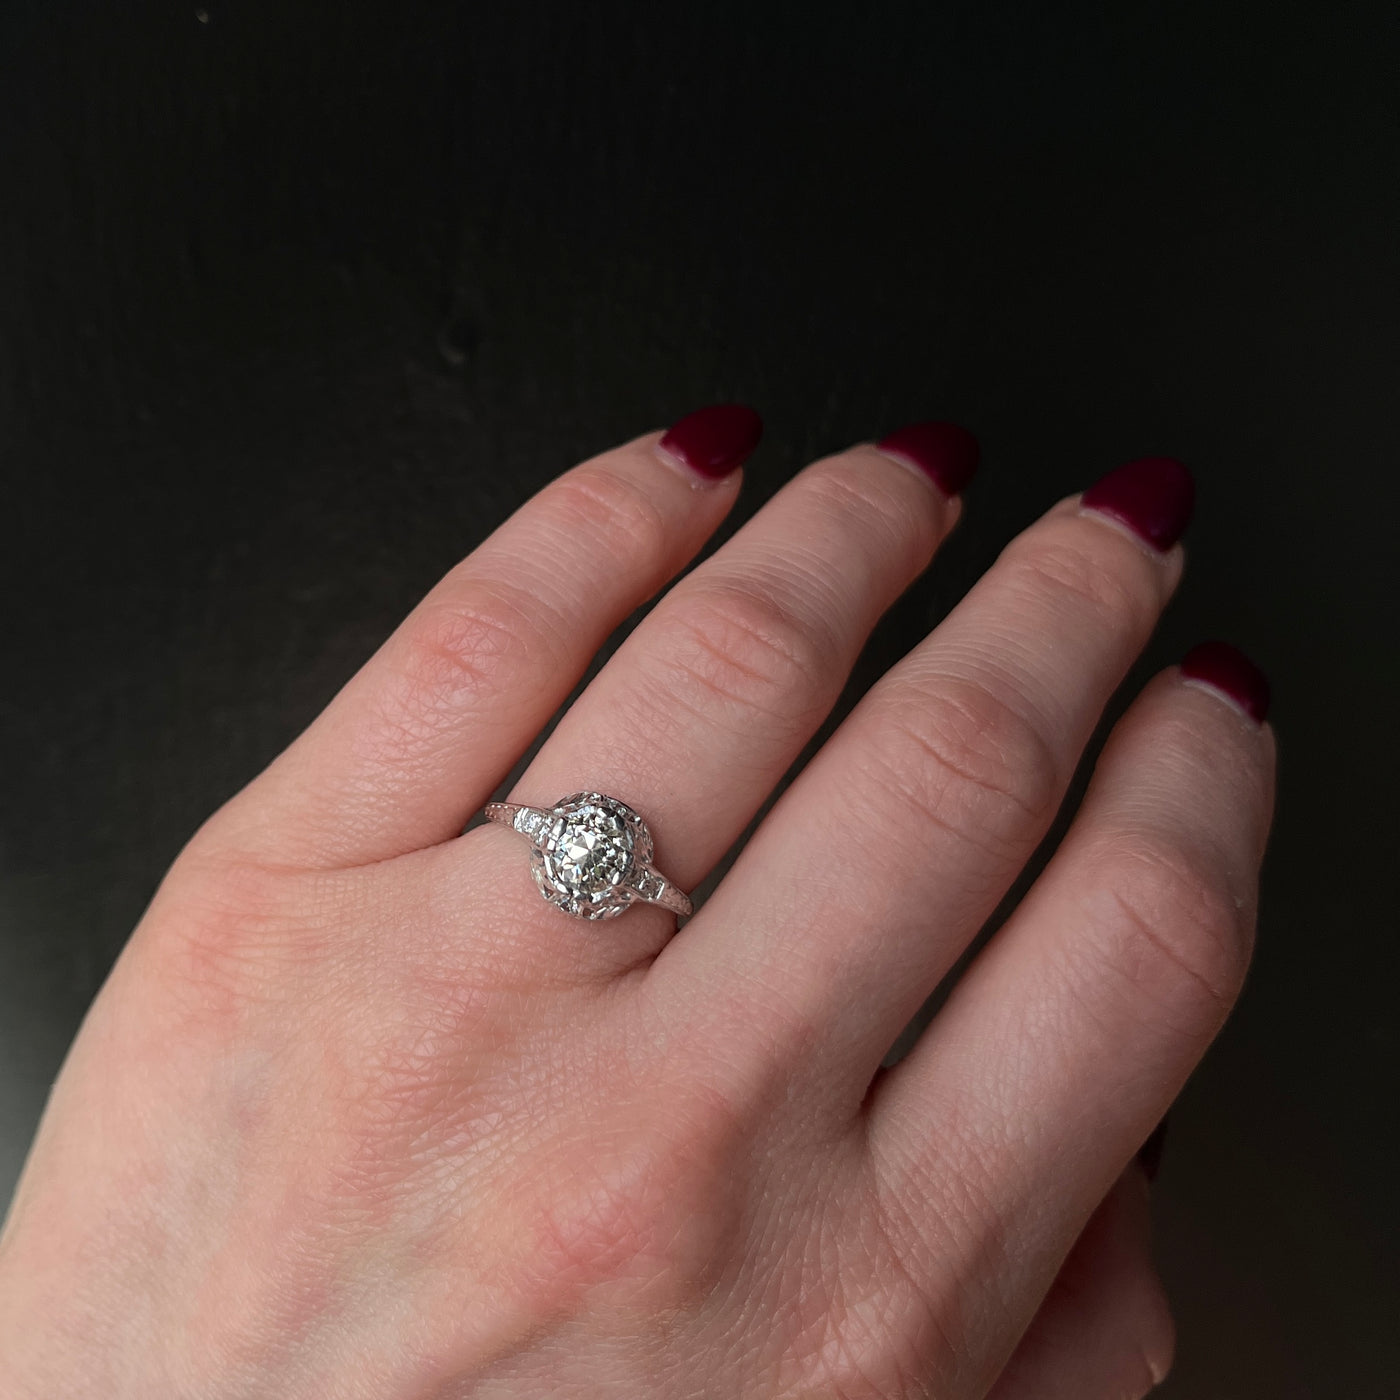 Art Deco Platinum 0.98 Carat Old Mine Cut Diamond Engagement Ring